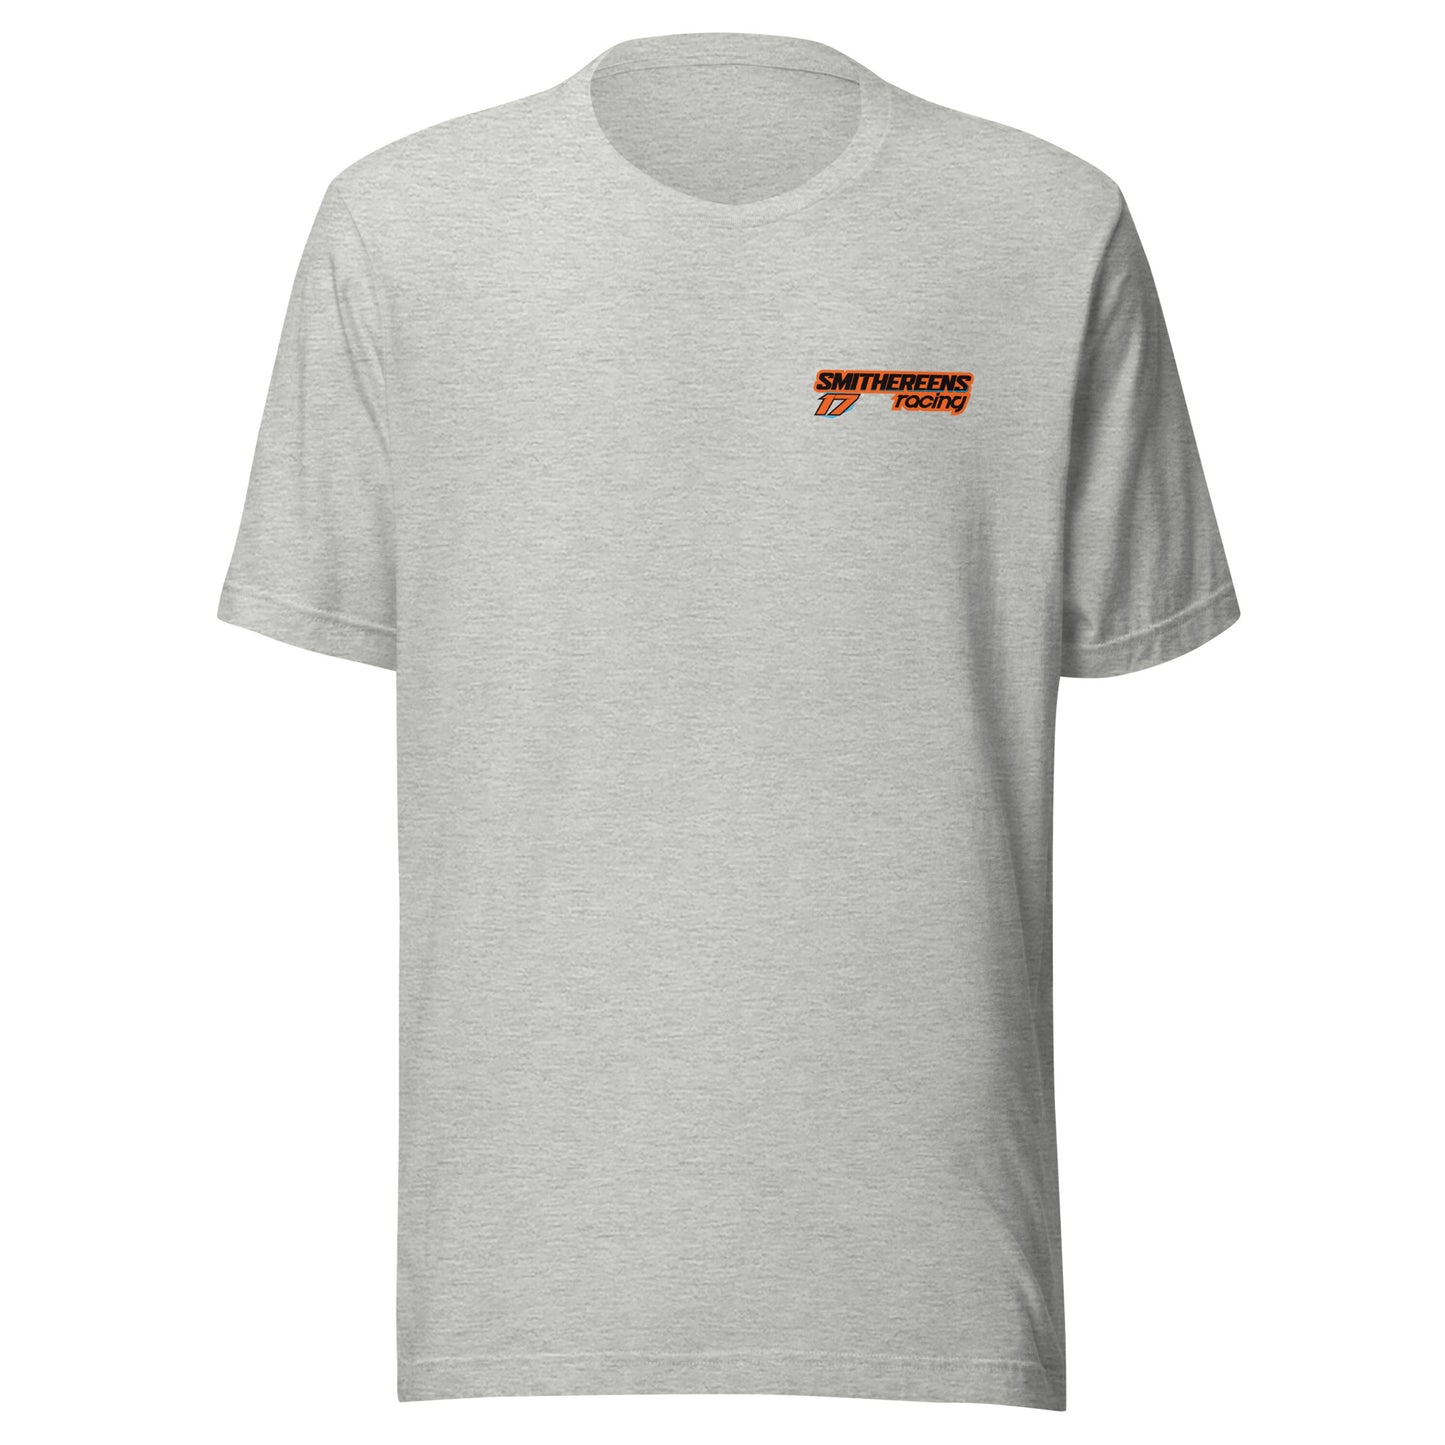 Smithereens Racing T-Shirt